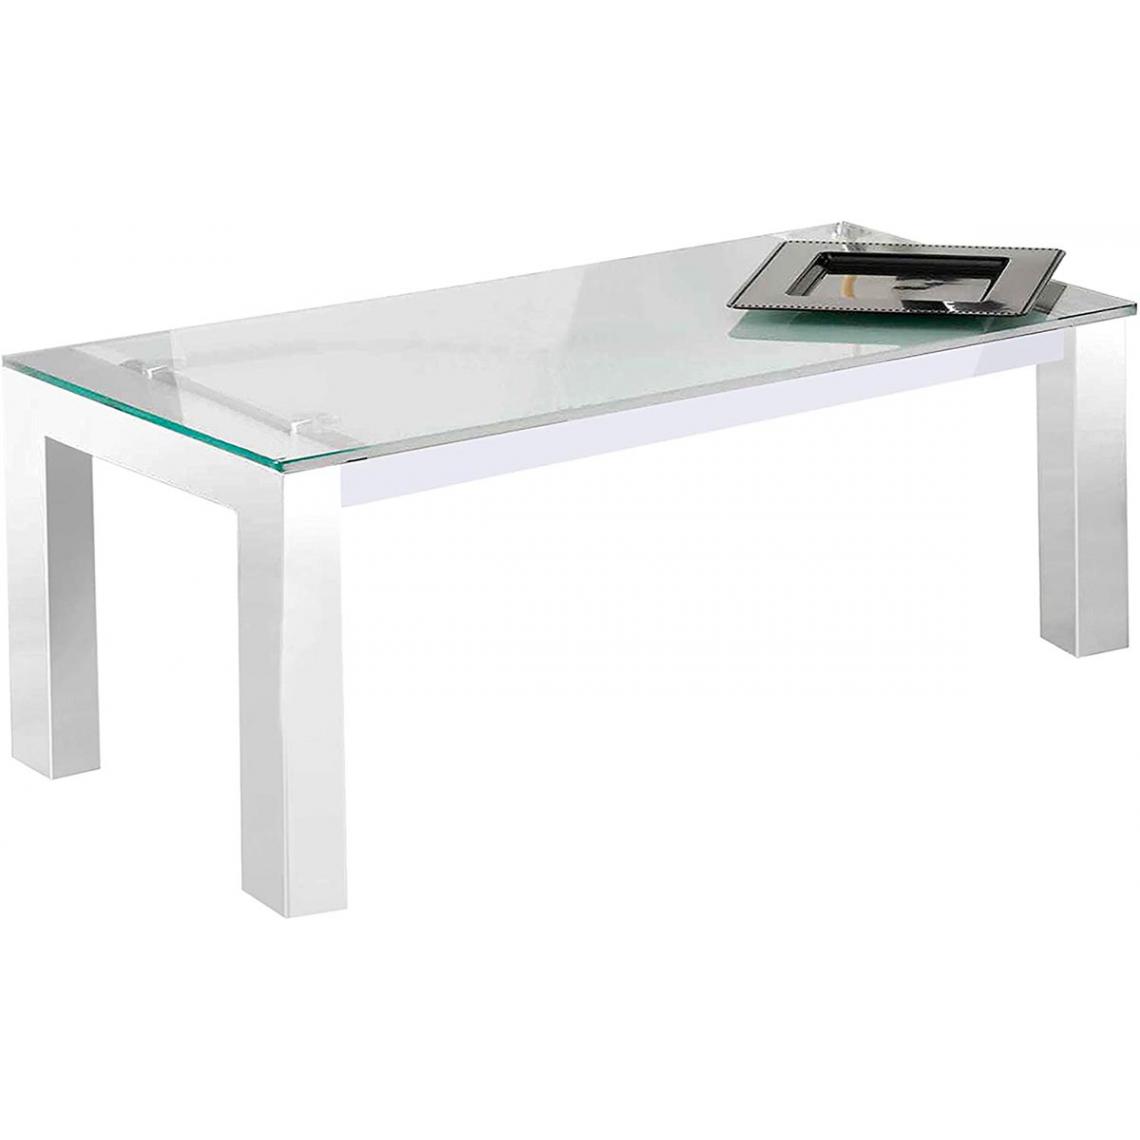 Pegane - Table basse relevable en verre trempé coloris blanc - Longueur 112 x profondeur 50 x hauteur 44 - 57 cm - Tables basses